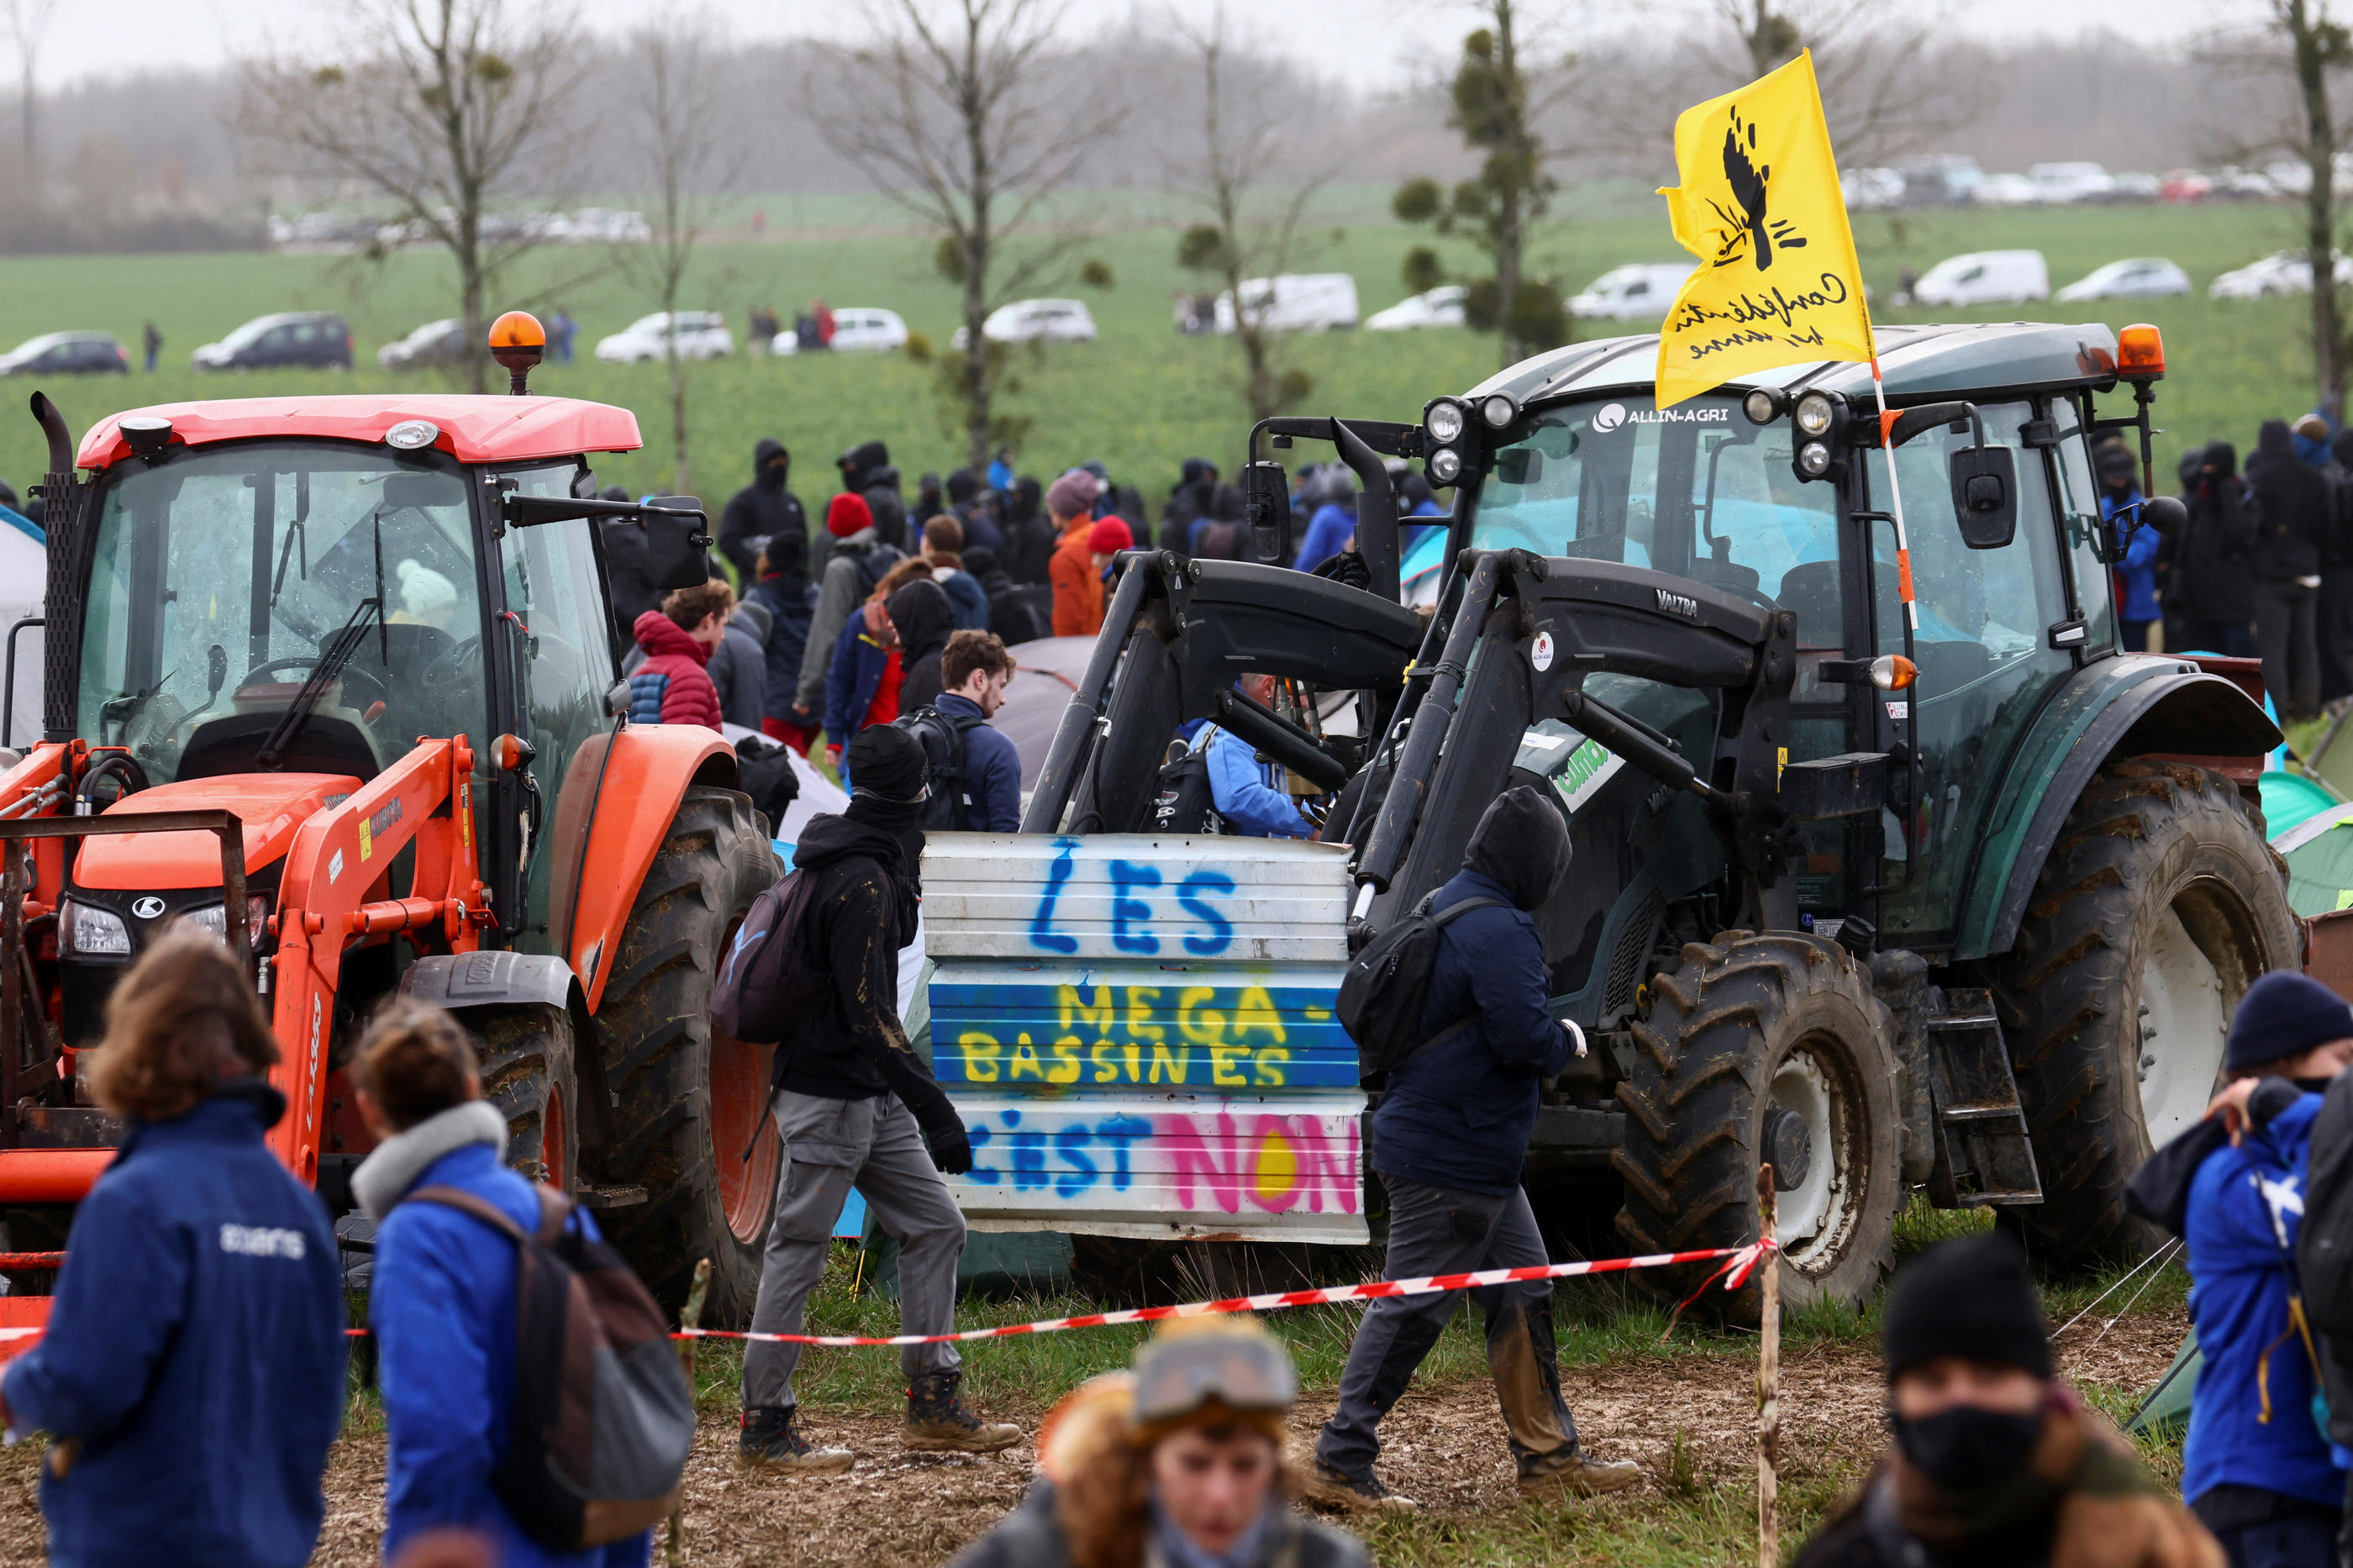 Une manifestation contre le projet de mégabassines de Sainte-Soline (Deux-Sèvres) avait eu lieu en mars dernier (Illustration). Reuters/Yves Herman